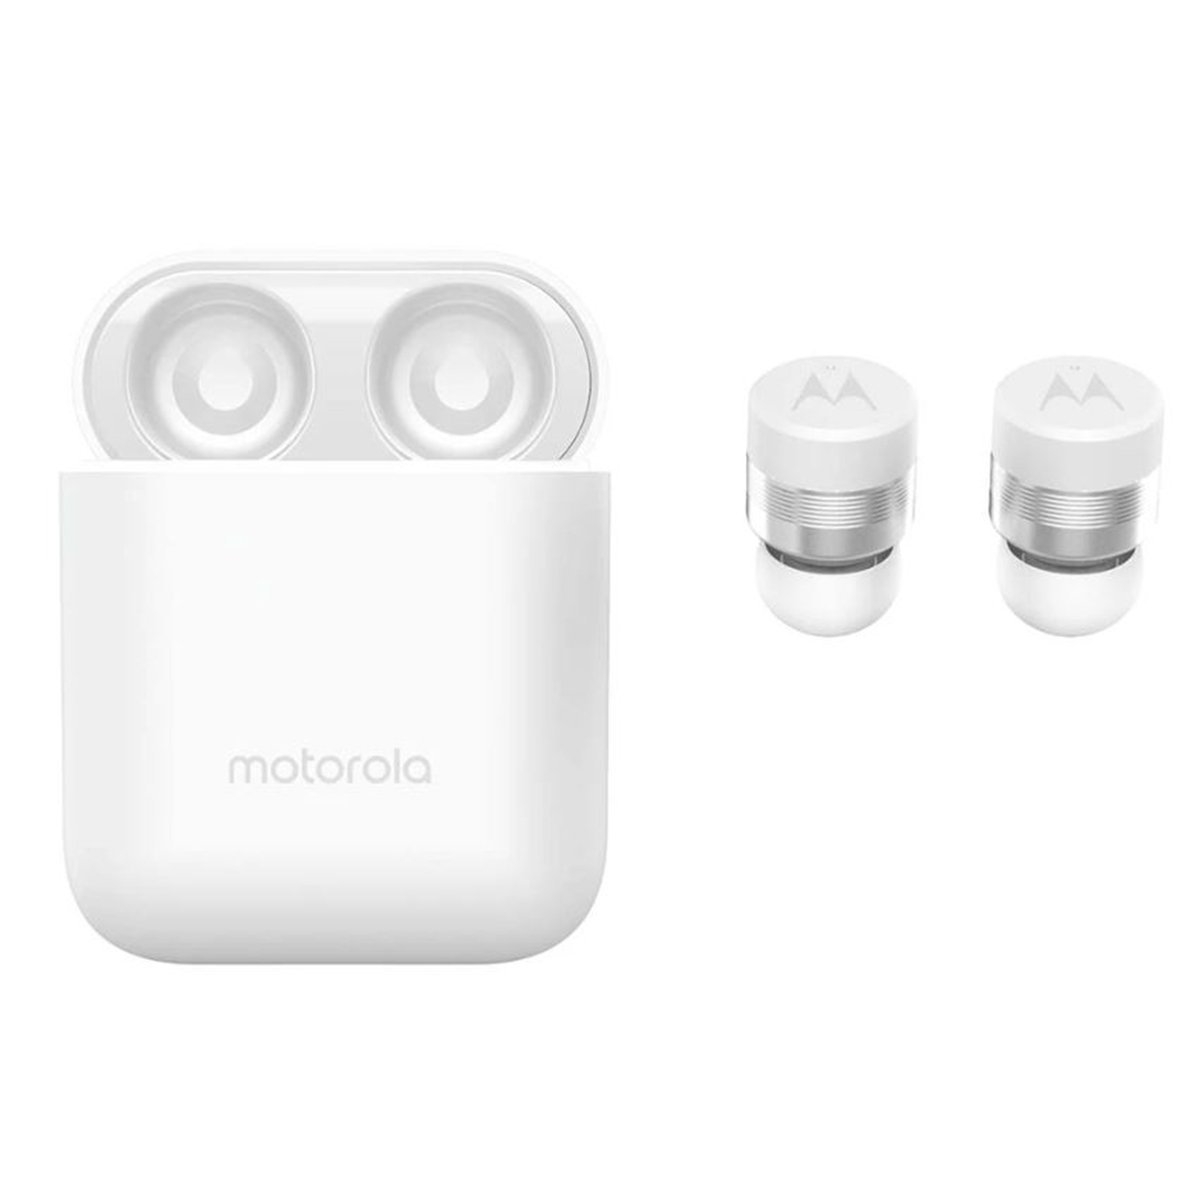 Motorola Verve Buds 110 True wireless In-Ear Headphones White